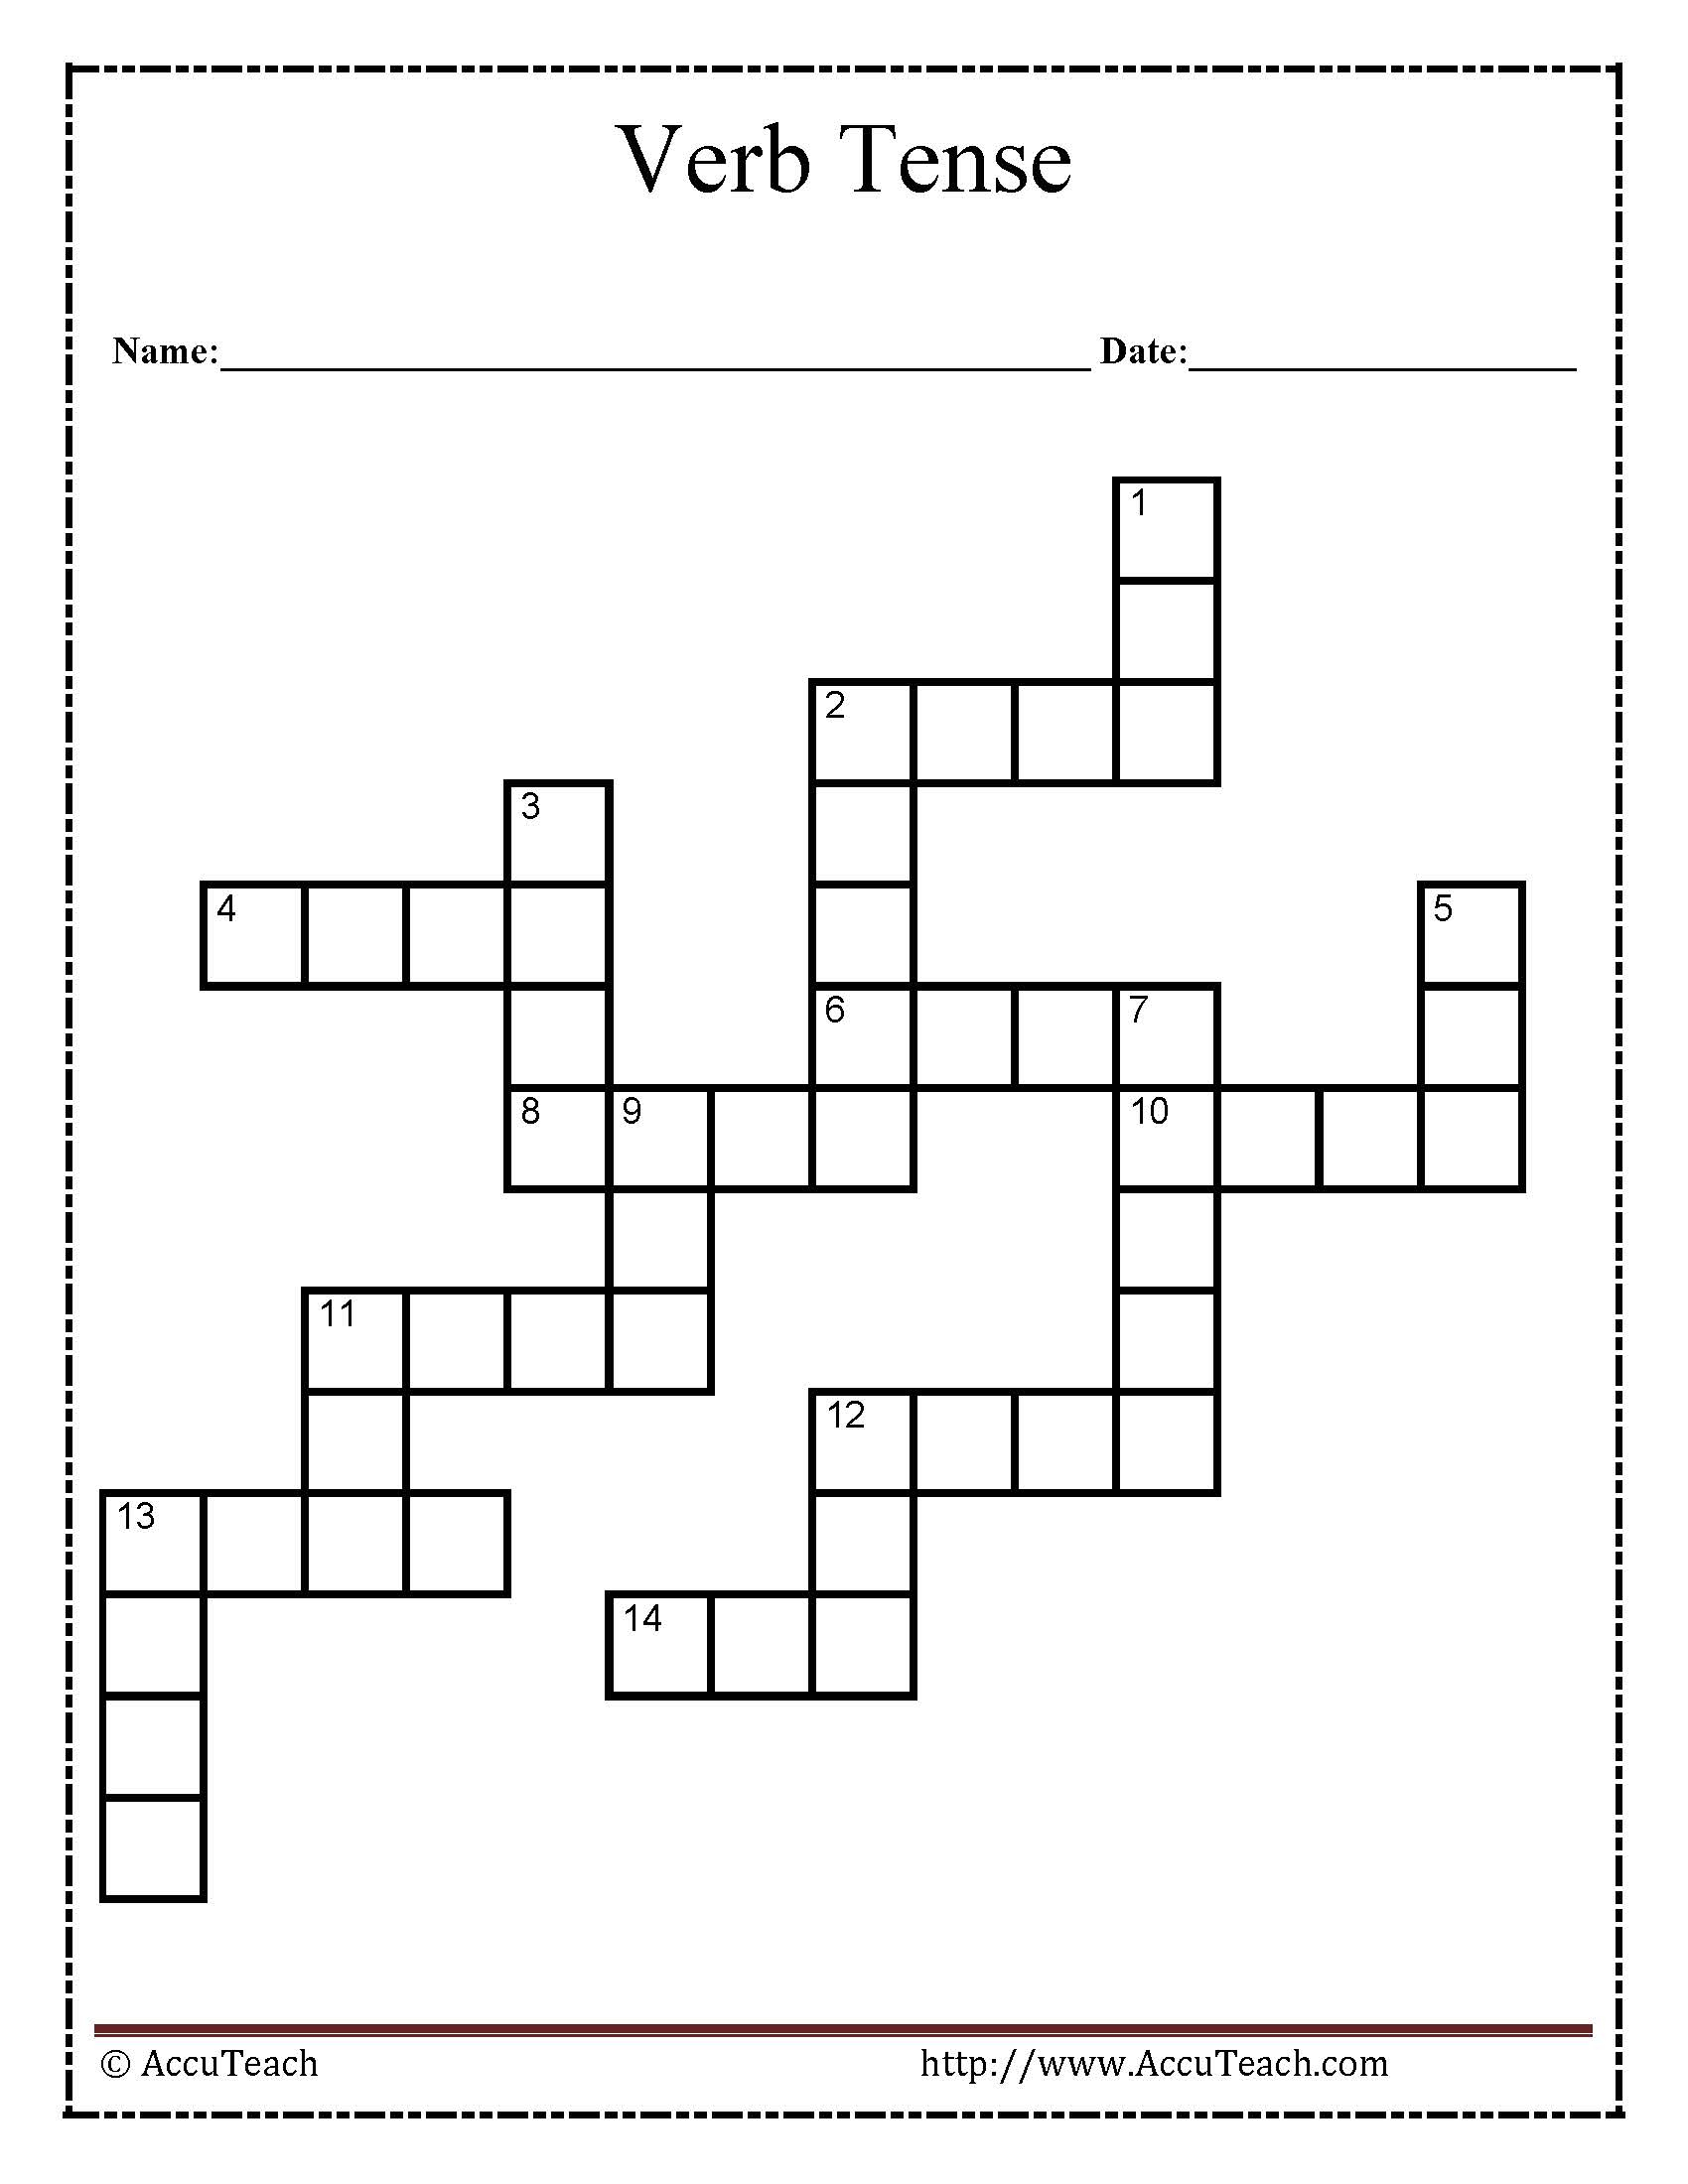 Verb Tense Crossword Puzzle Worksheet - Printable Crosswords For Year 4